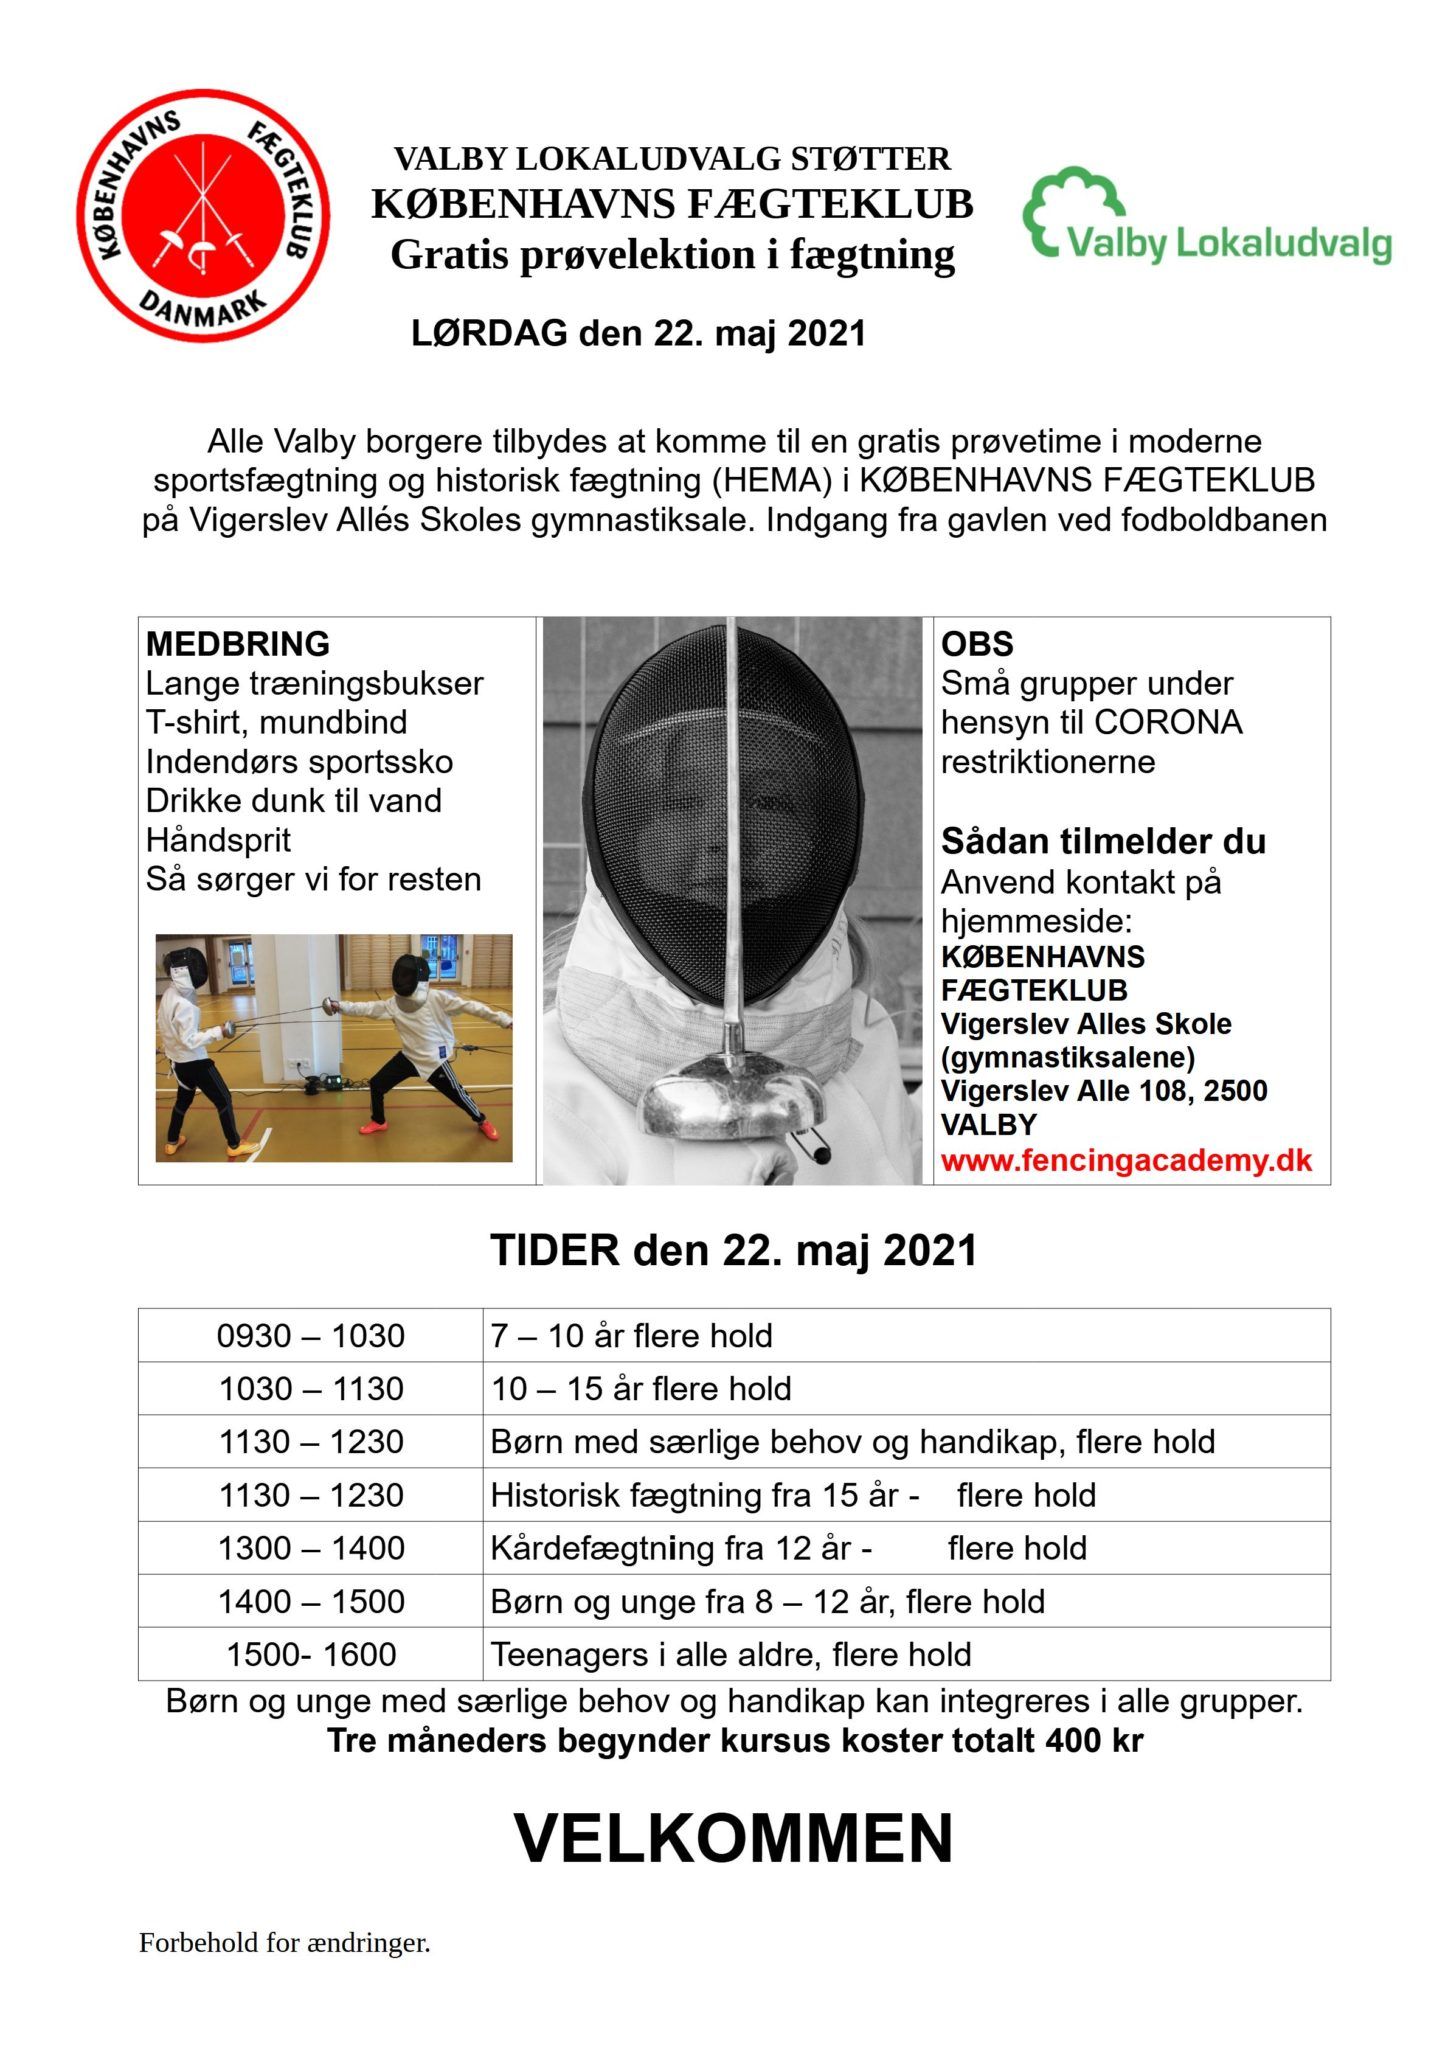 Åbent Hus 22 maj 2021 Københavns fægteklub